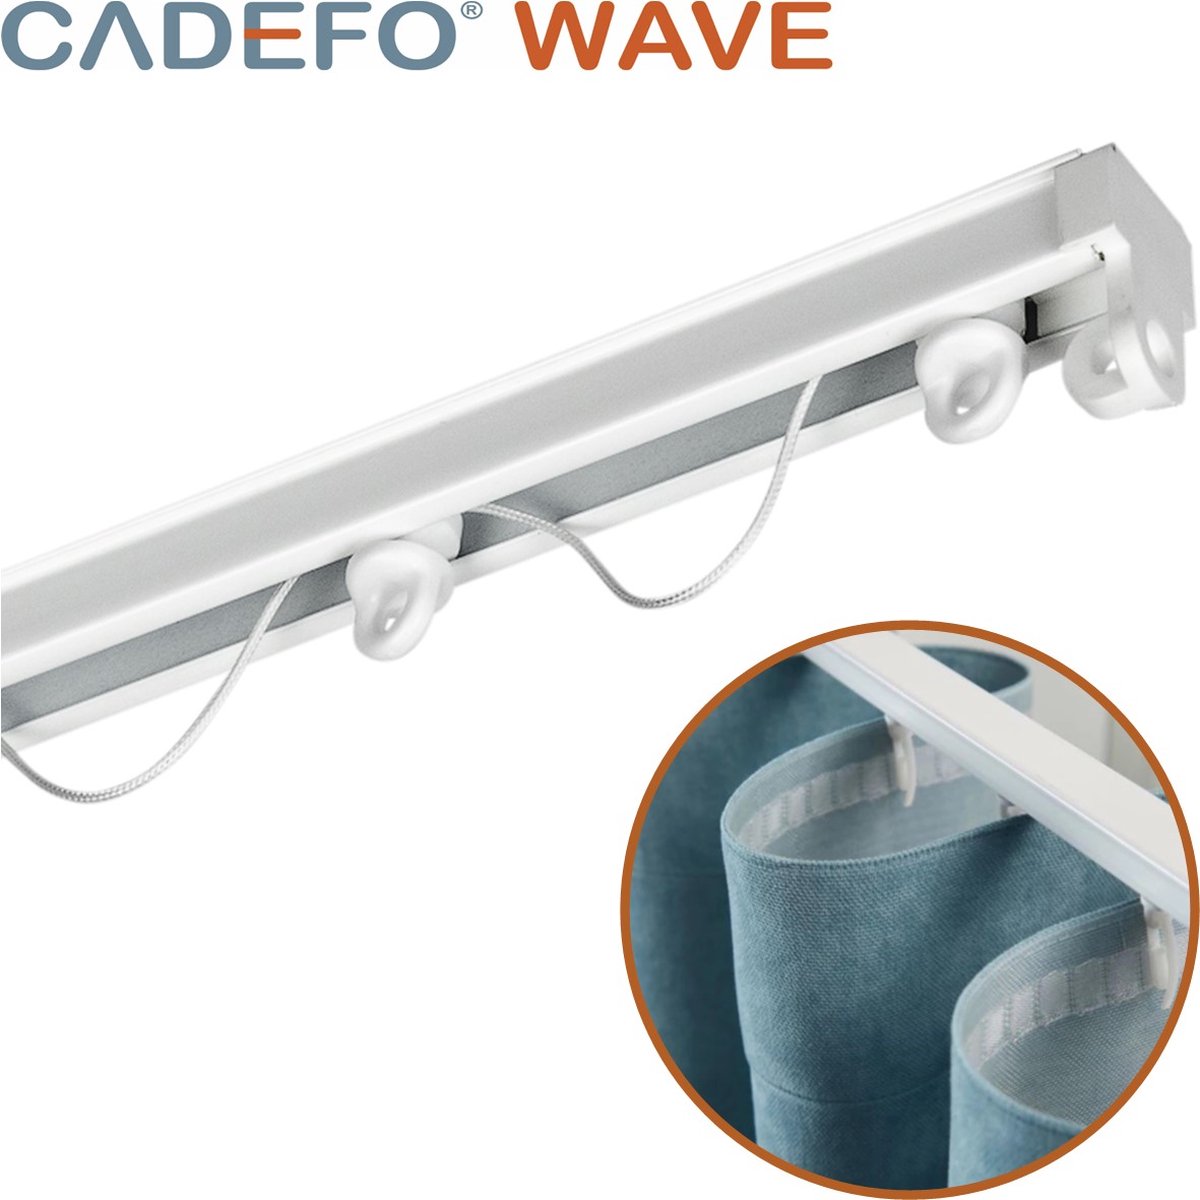 CADEFO WAVE (451 - 500 cm) Gordijnrails - Compleet op maat! - UIT 1 STUK - Leverbaar tot 6 meter - Plafondbevestiging - Lengte 472 cm